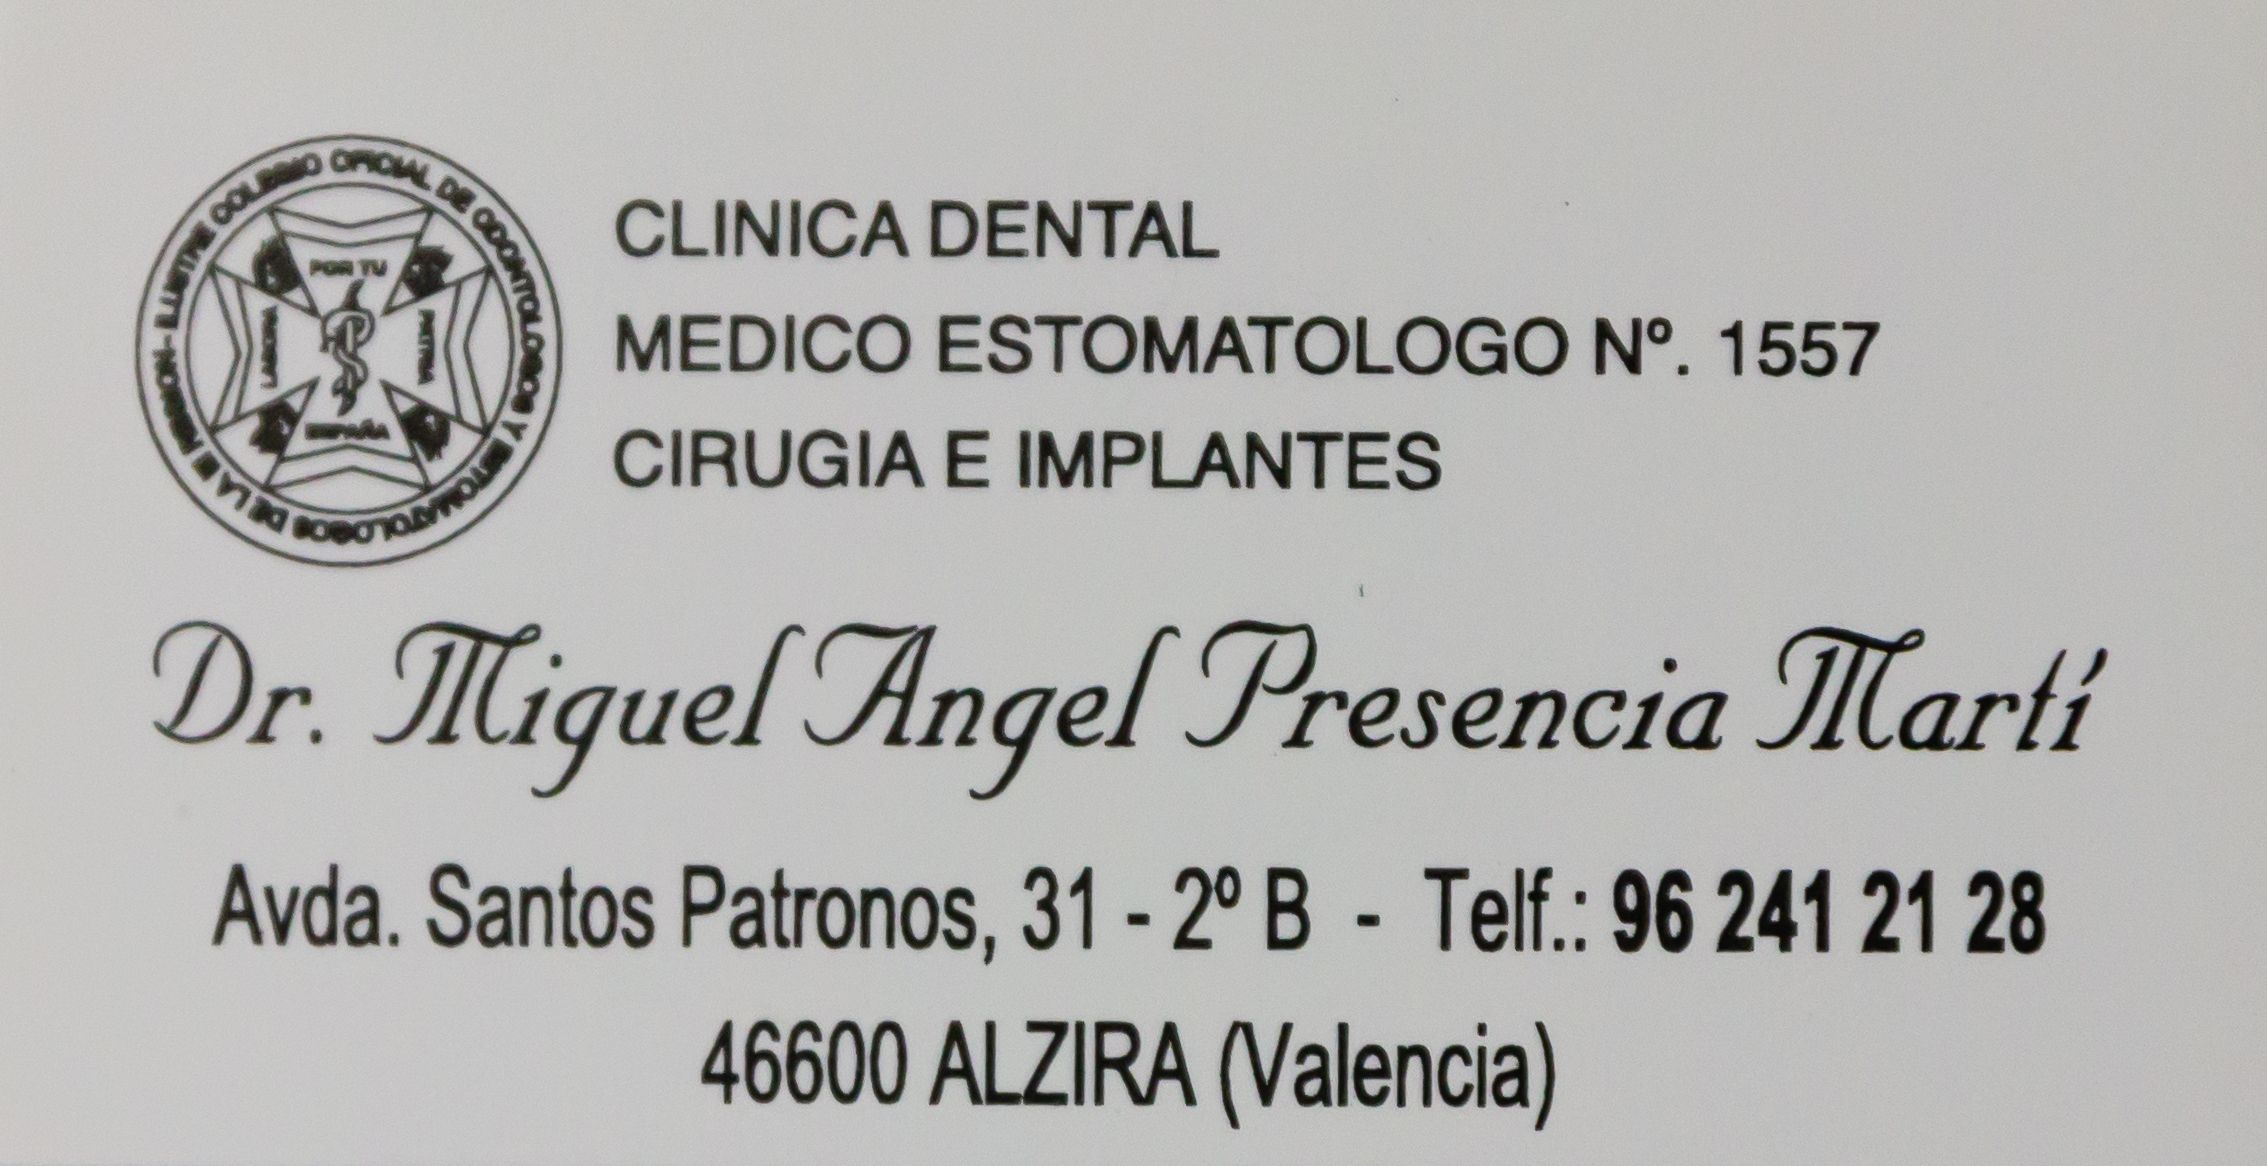 Foto 6 de Dentistas en Alzira | Clínica Dental Presencia